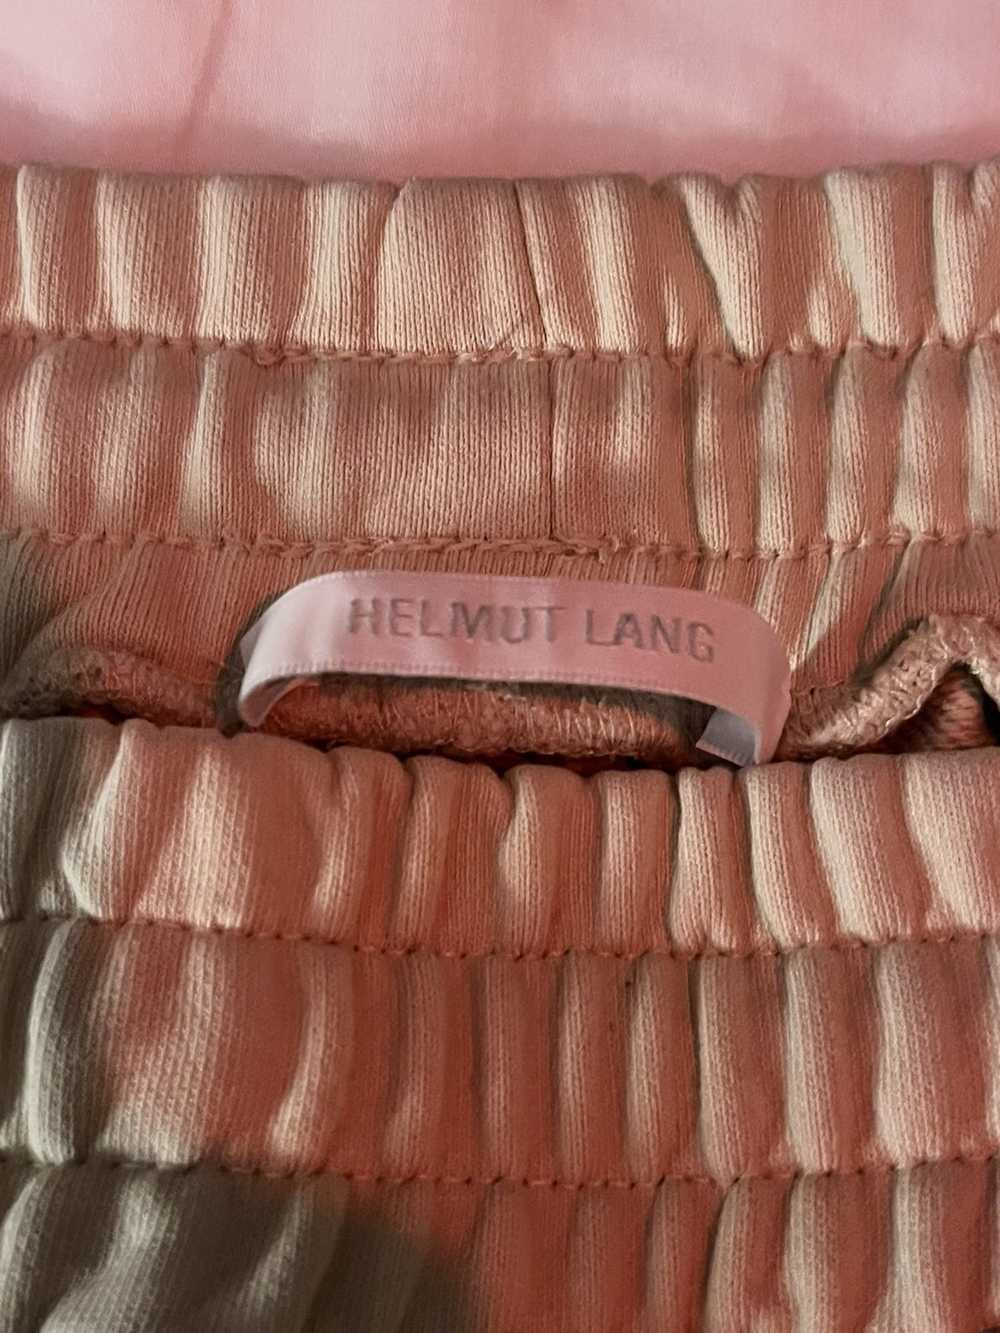 Helmut Lang Helmut Lang Sweatpants size m - image 3